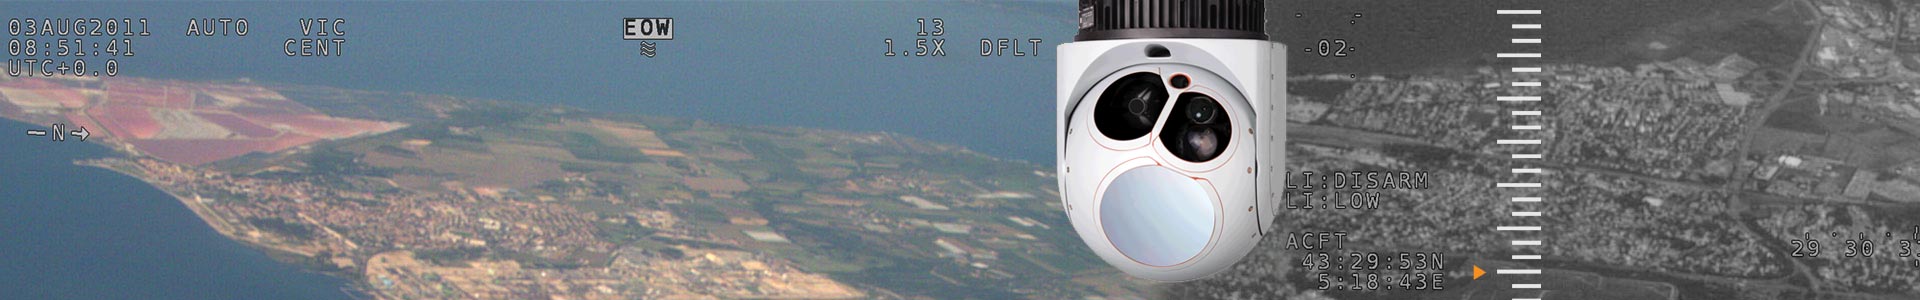 distributeur des caméras L3-Wescam pour la France et le Luxembourg